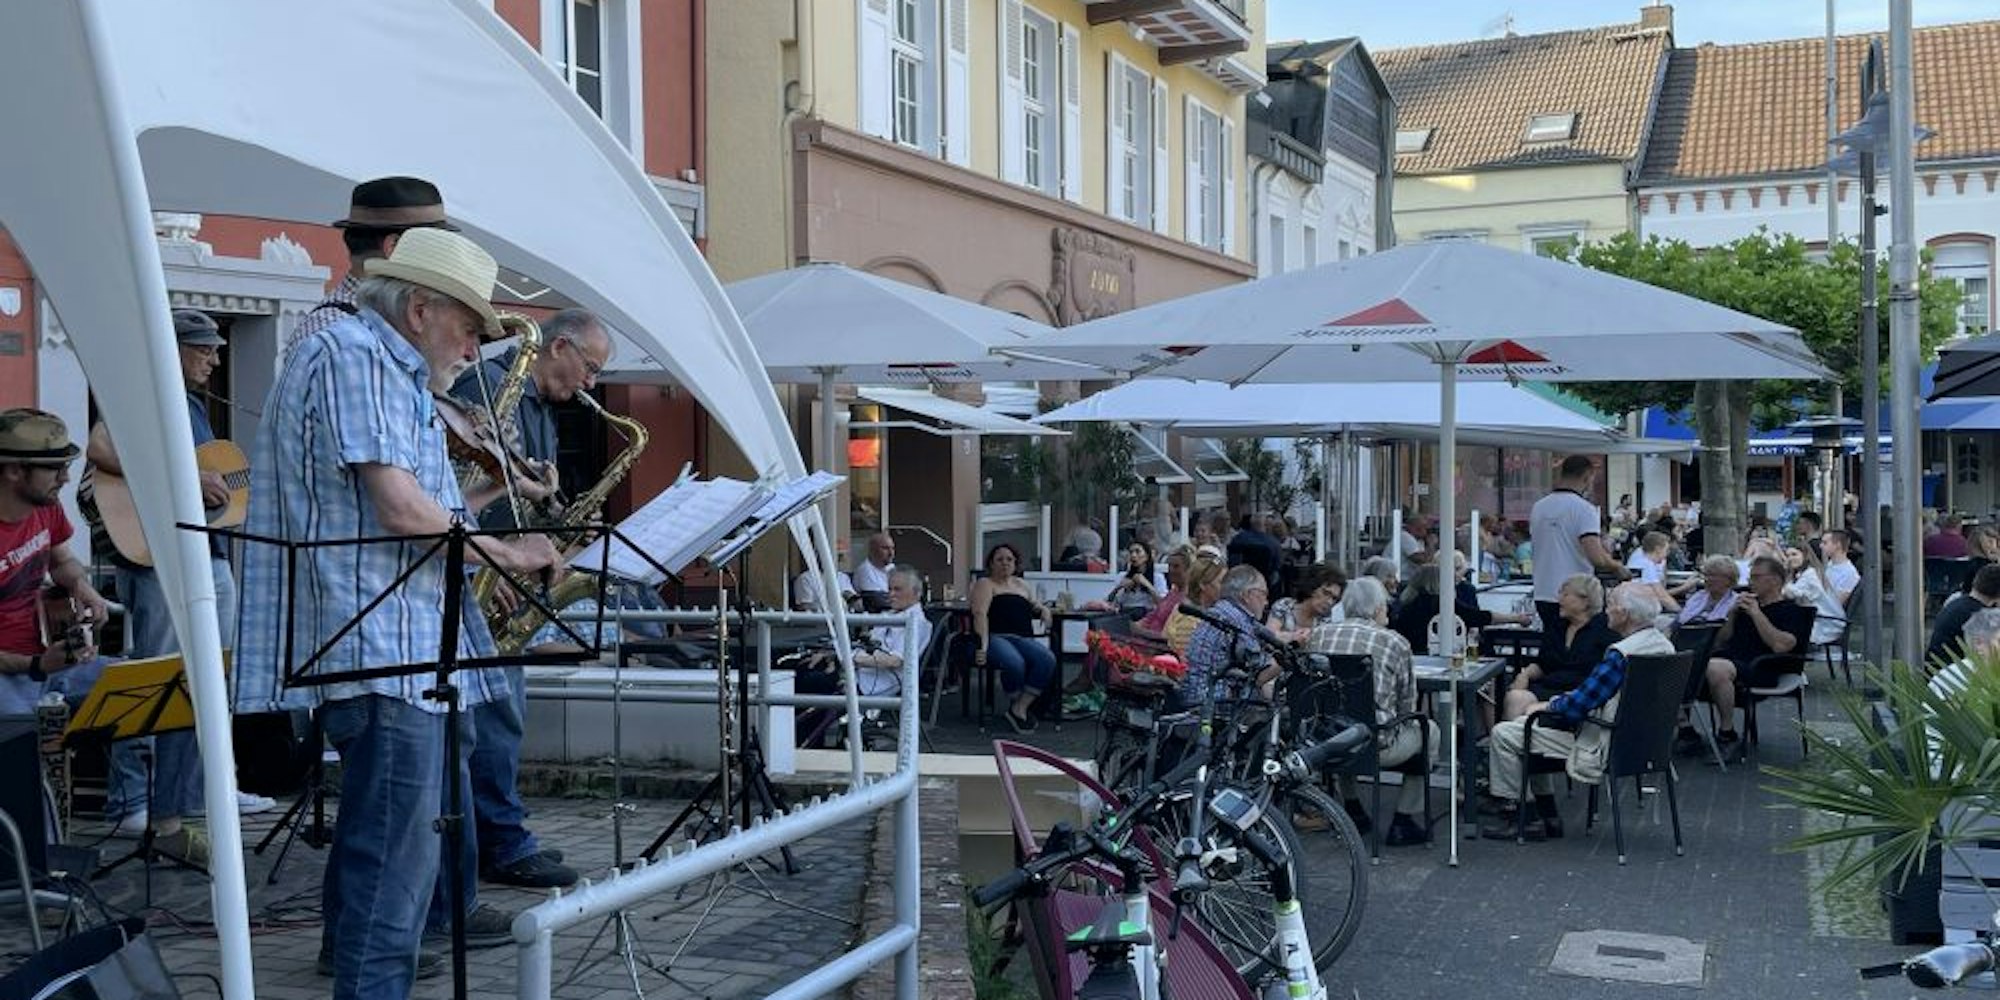 Musik auf dem Alten Markt in Euskirchen: So langsam kehrt die Normalität zurück.